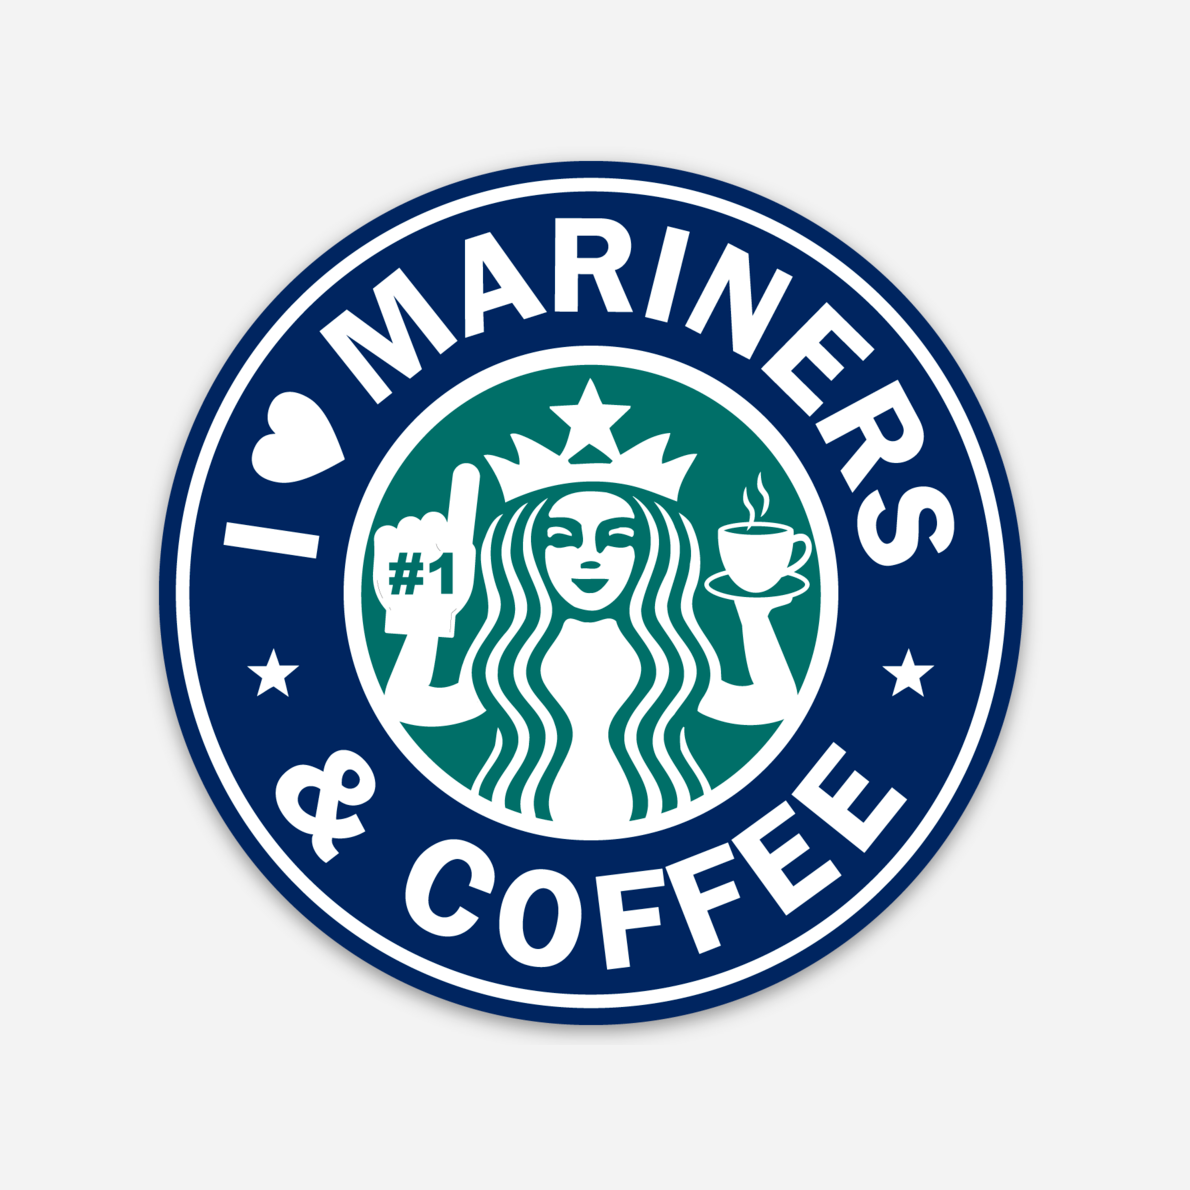 Mariners & Coffee